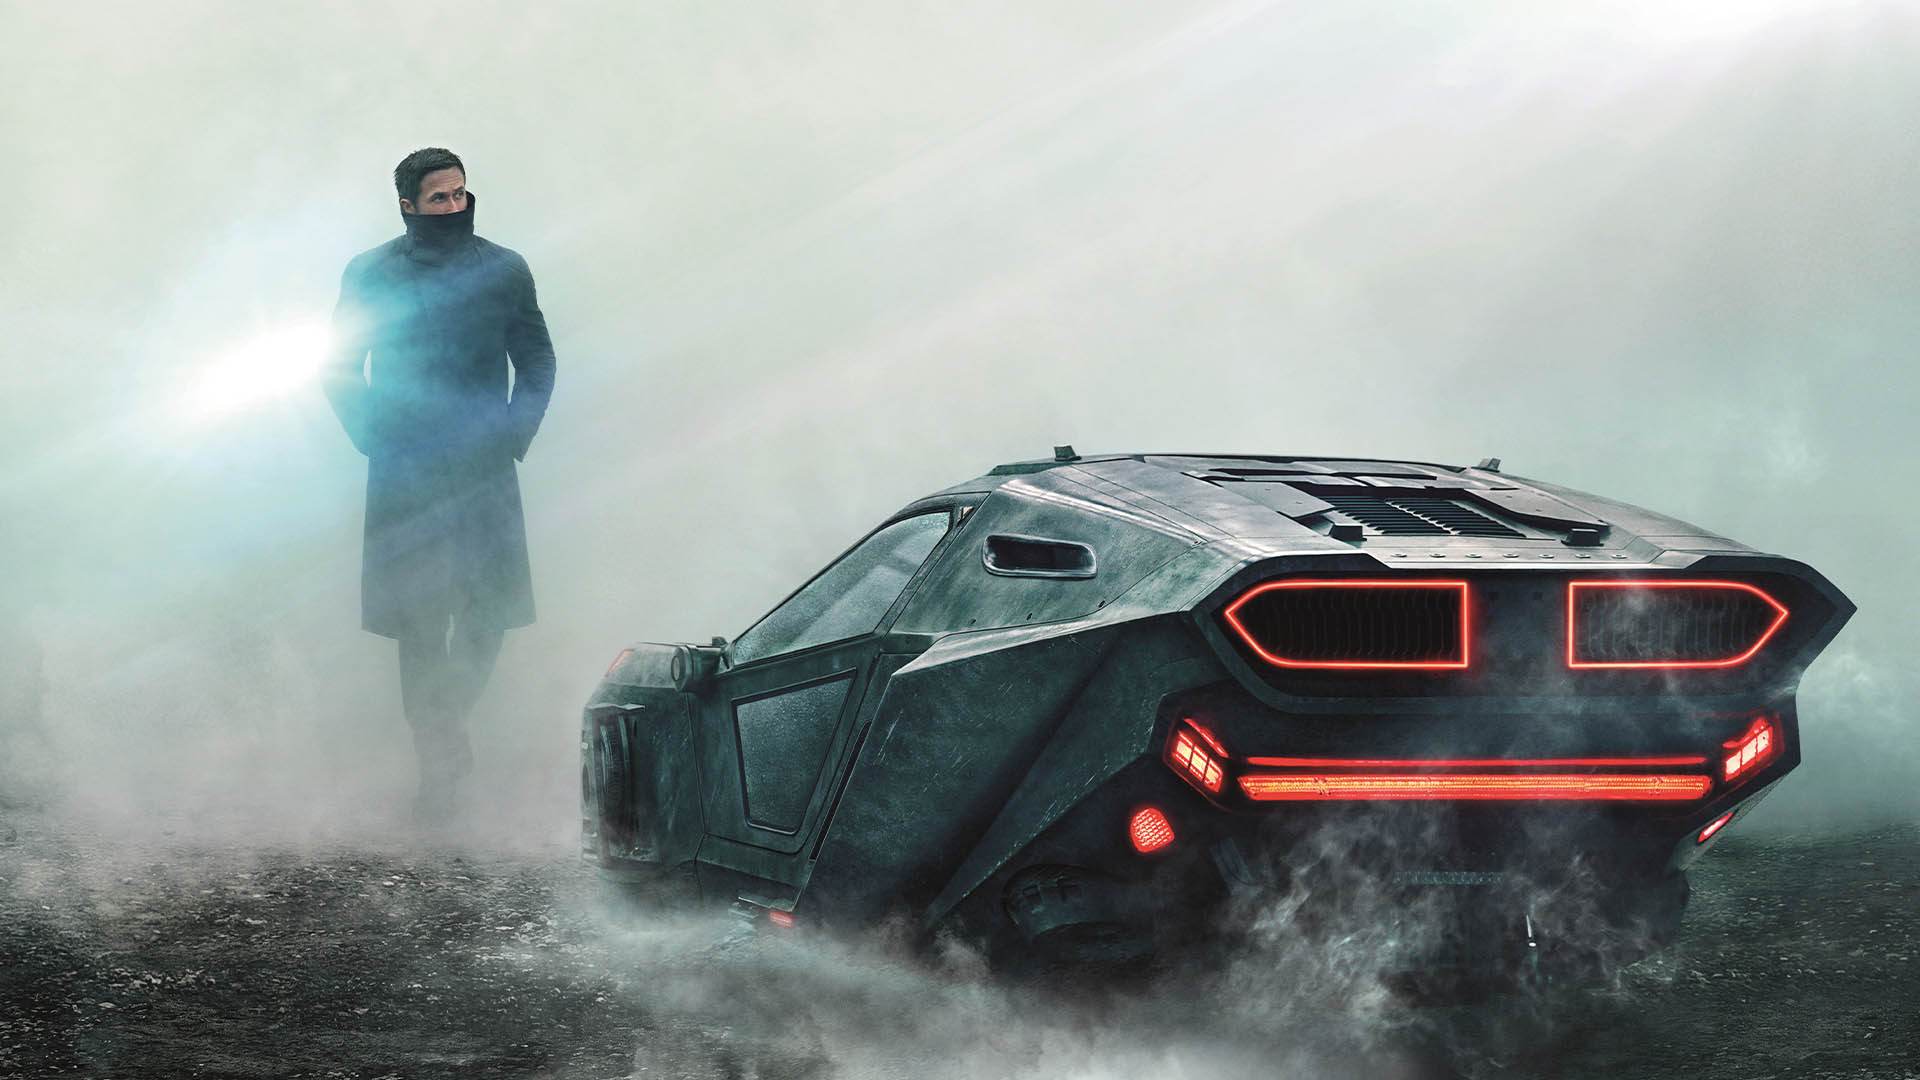 شخصیت کی با بازی رایان گاسلینگ درکنار ماشین خود در فیلم Blade Runner 2049